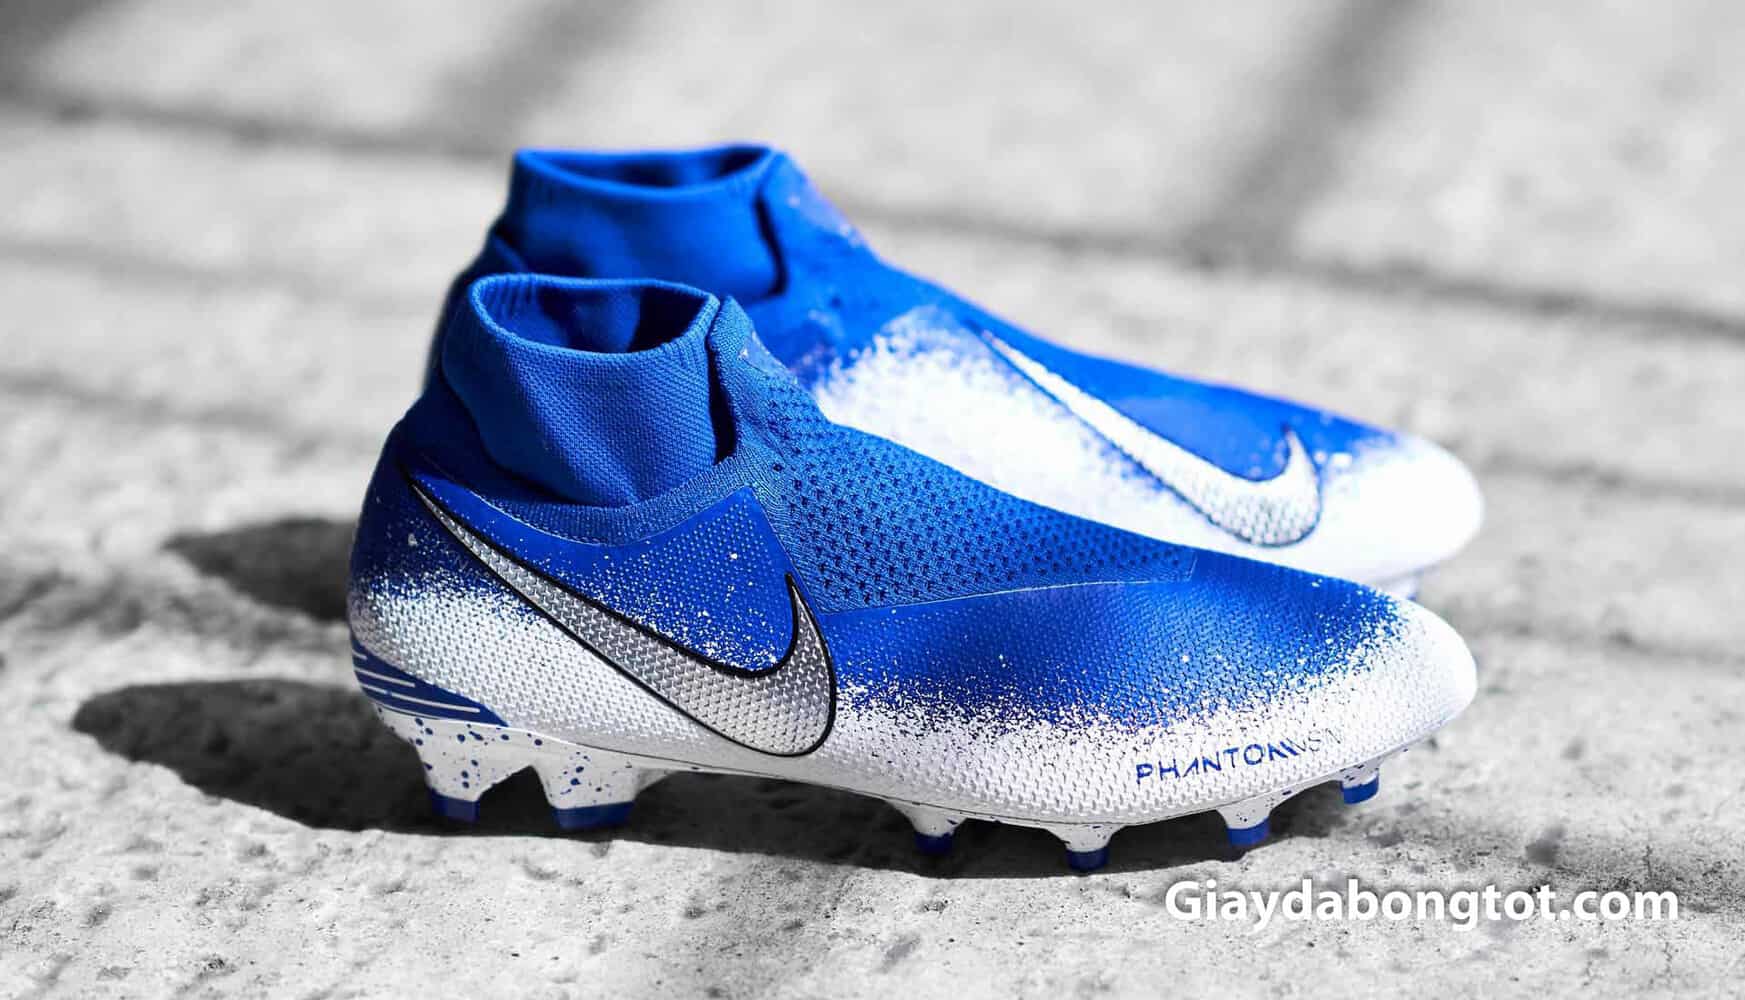 Giày bóng đá Nike Phantom VSN cao cổ "Euphoria Mode" được phối màu xanh dương trắng đẹp mắt